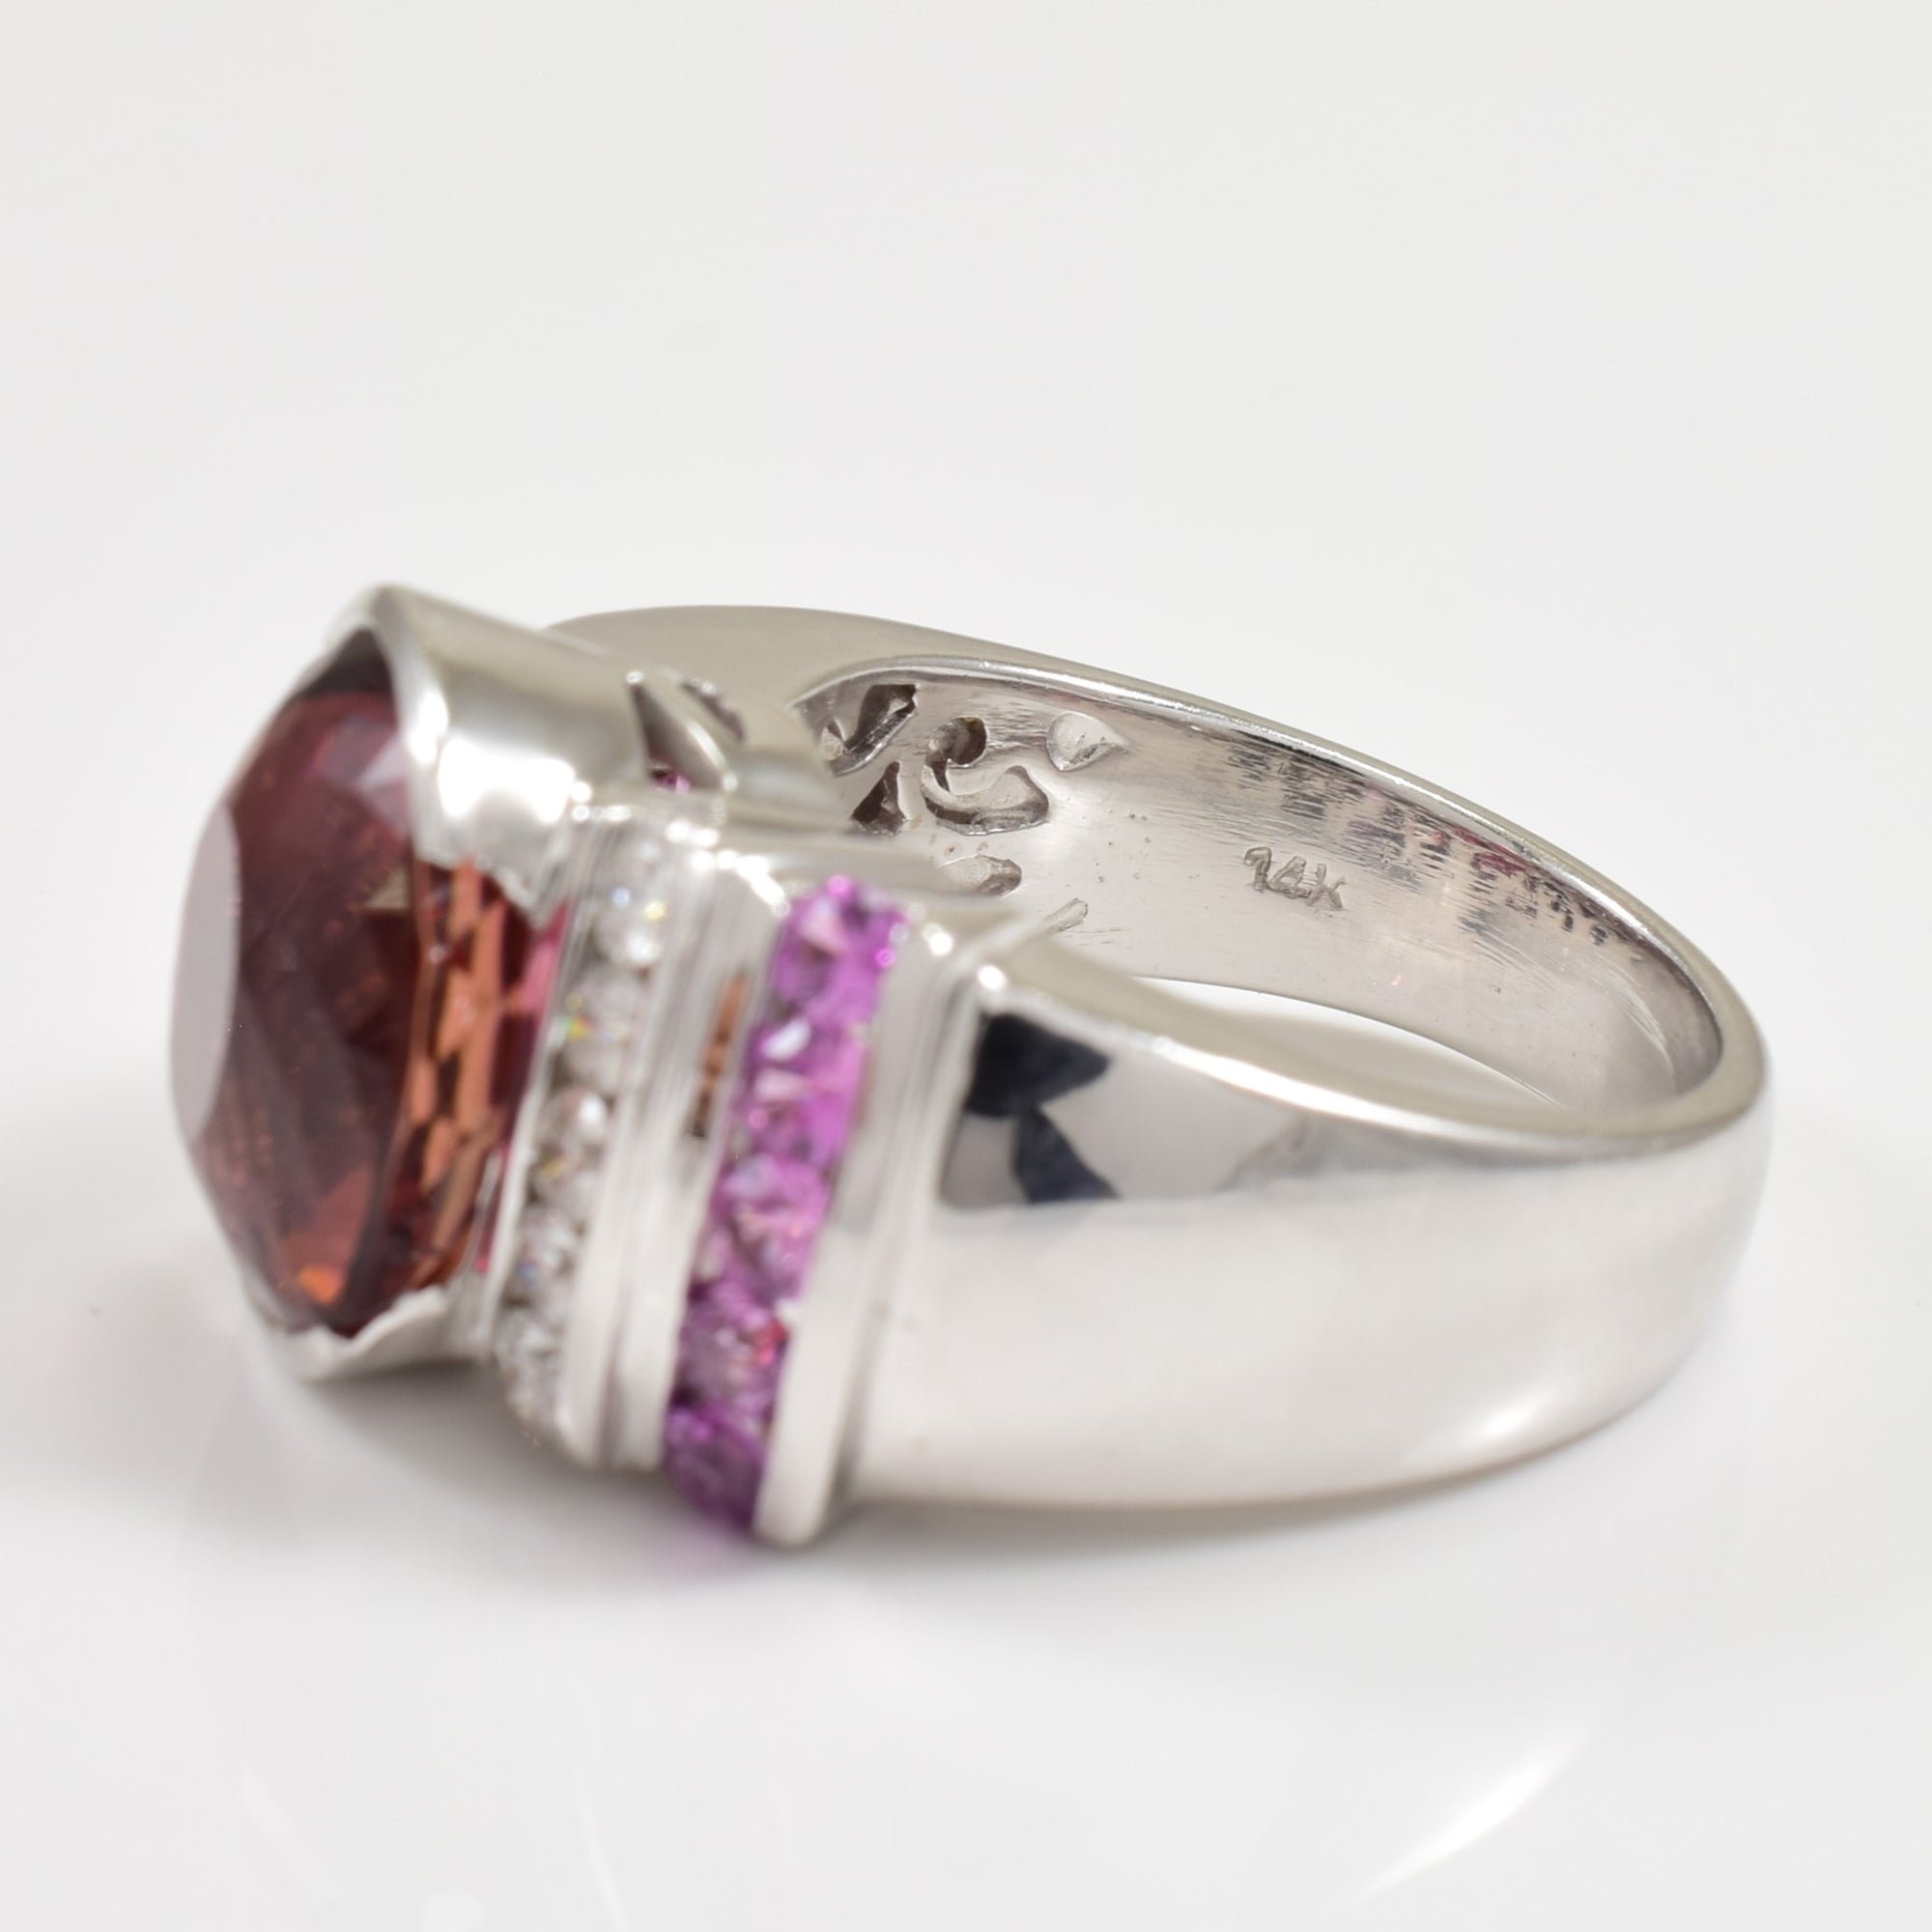 Tourmaline, Pink Sapphire, & Diamond Ring | 8.00ct, 0.90ctw, 0.35ctw | SZ 7 |